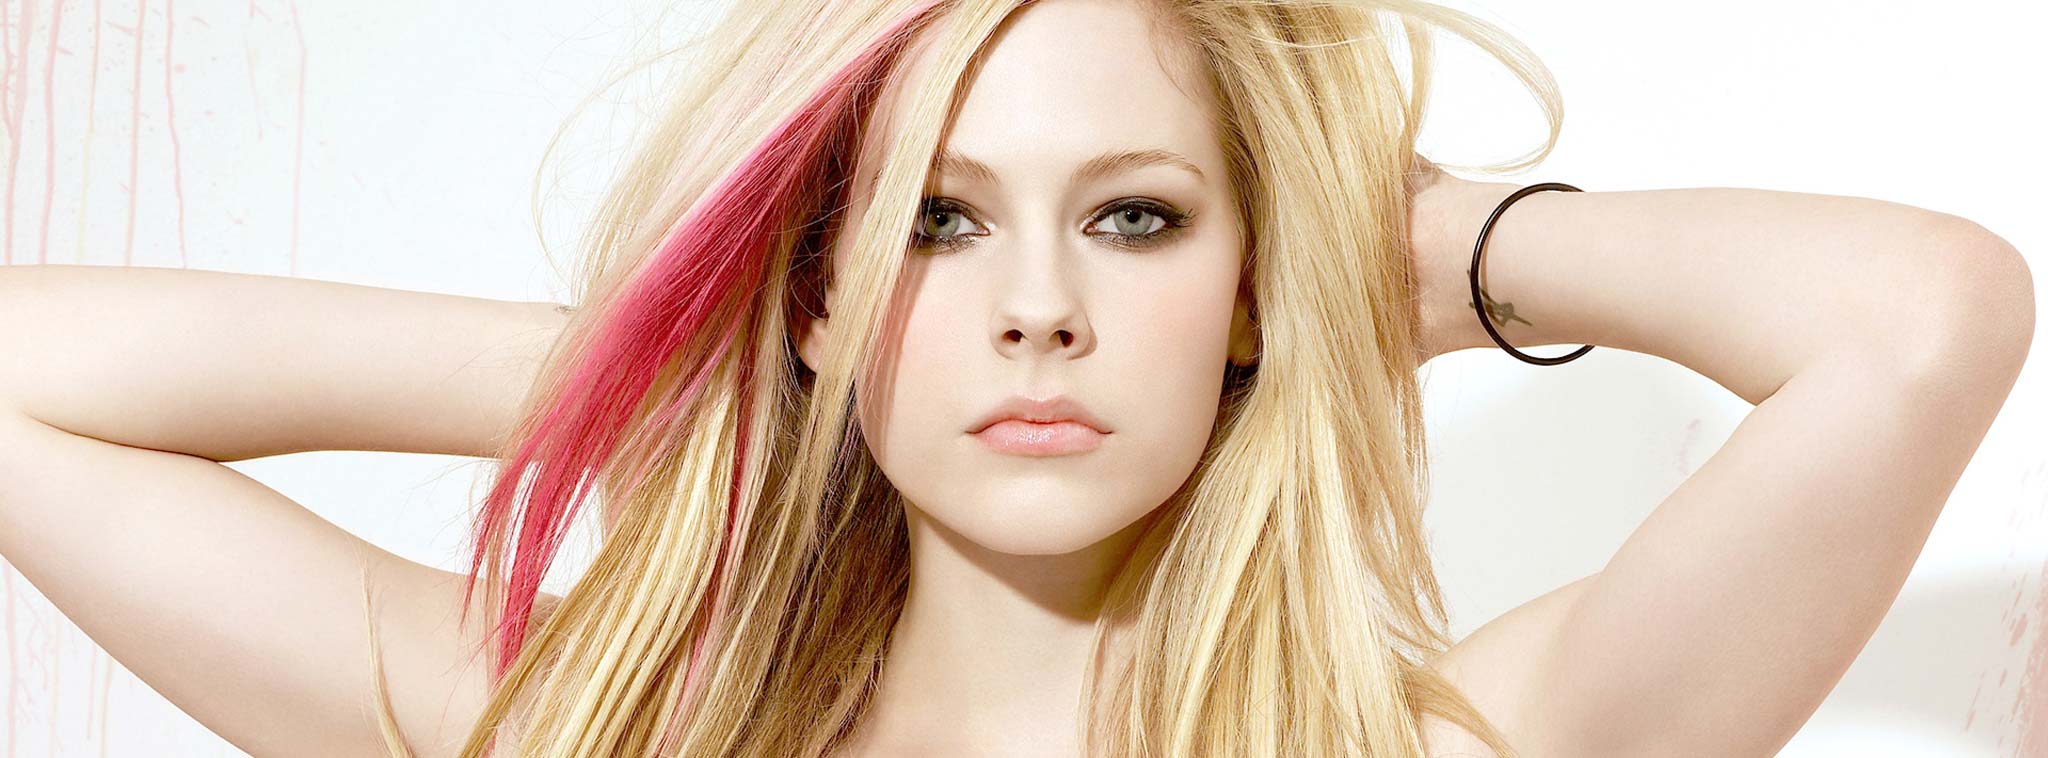 Avril Lavigne là một trong những người nguy hiểm nhất trên internet